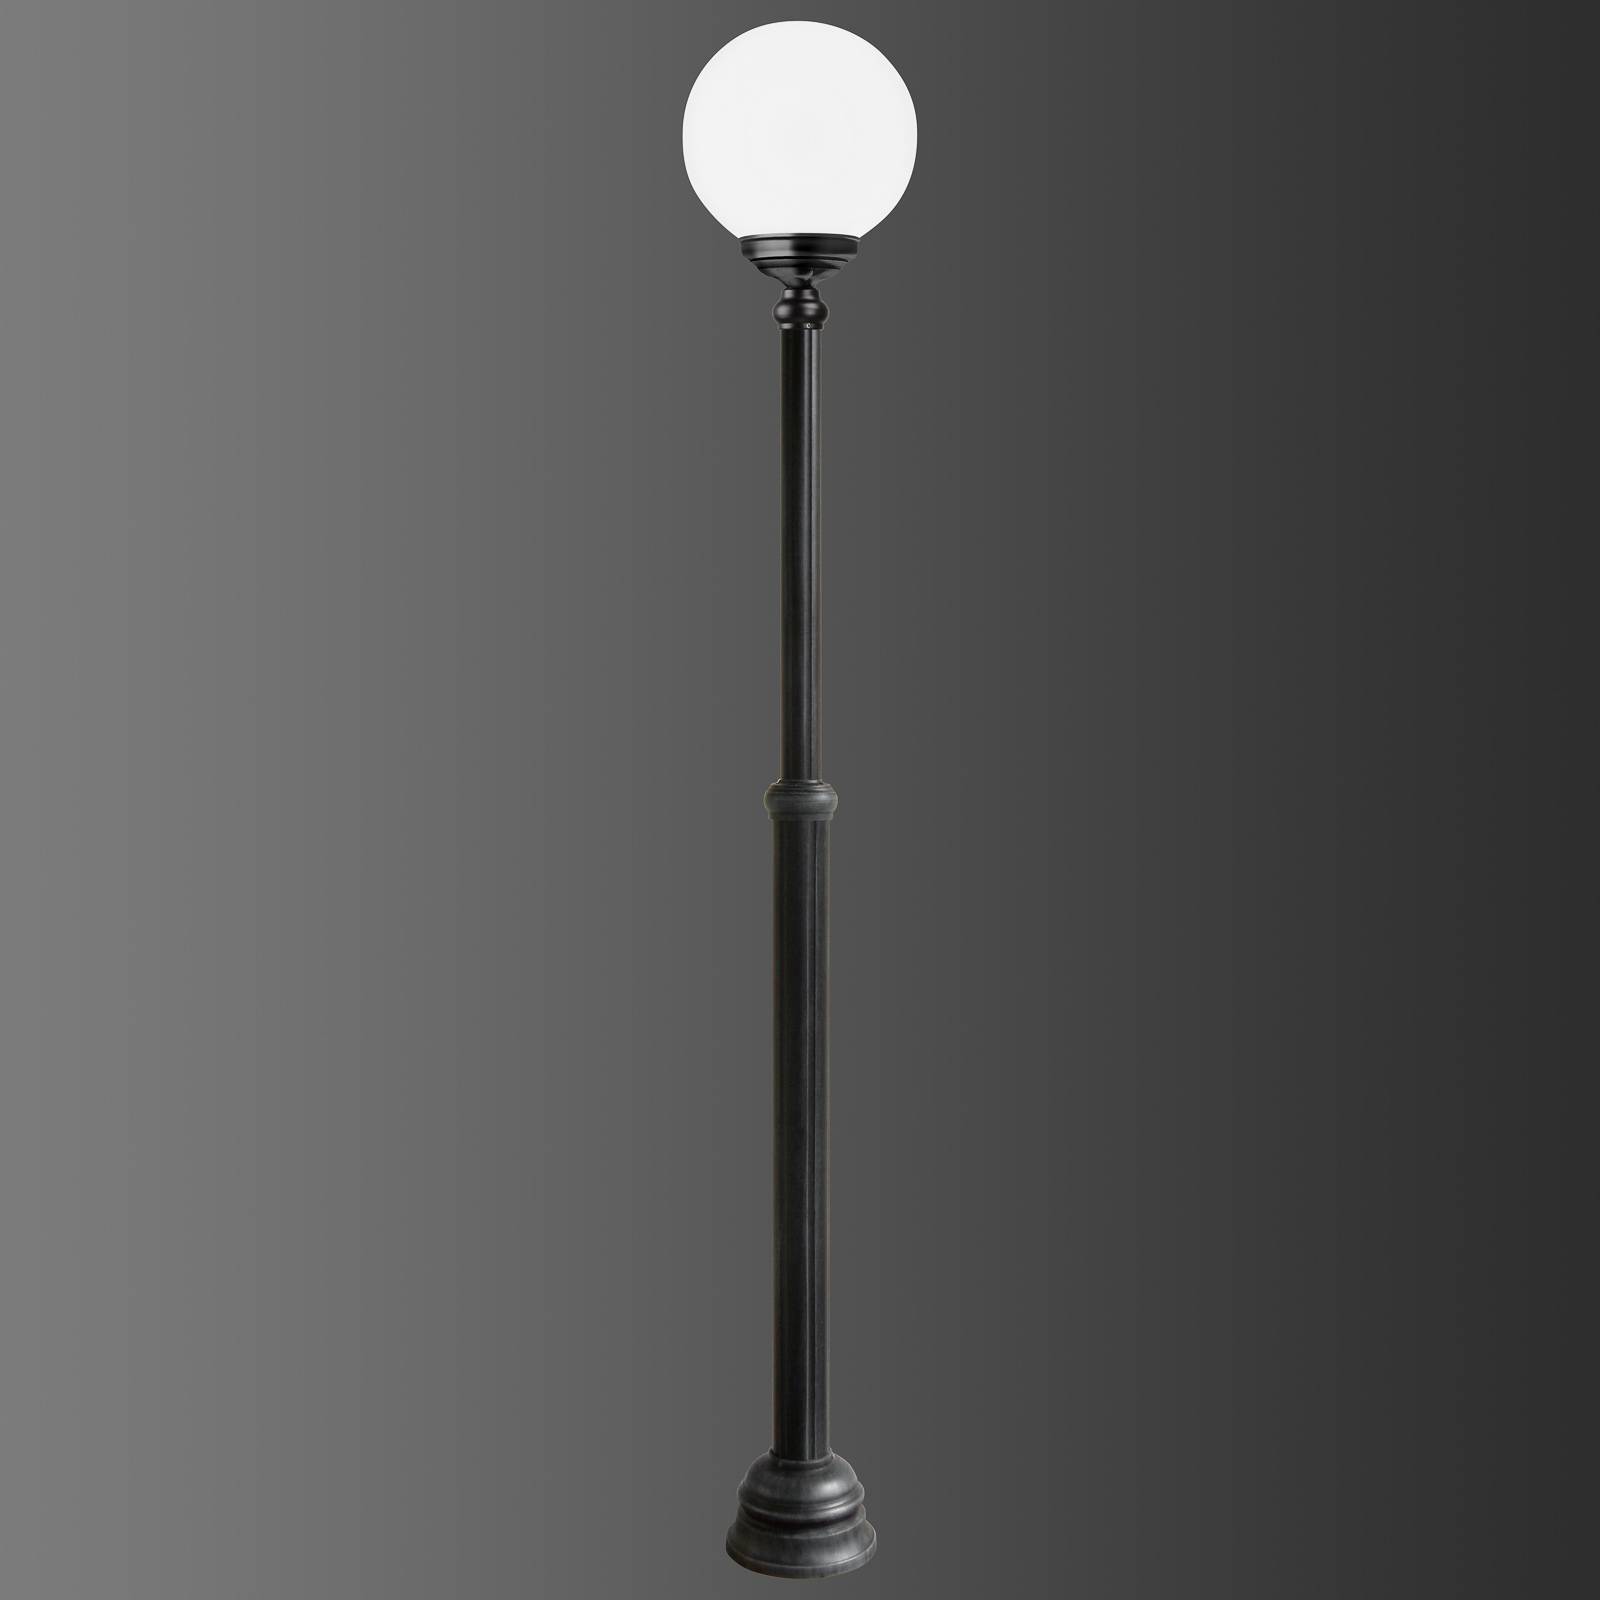 Lantaarnpaal 1143, 1-lamp, zwart/wit